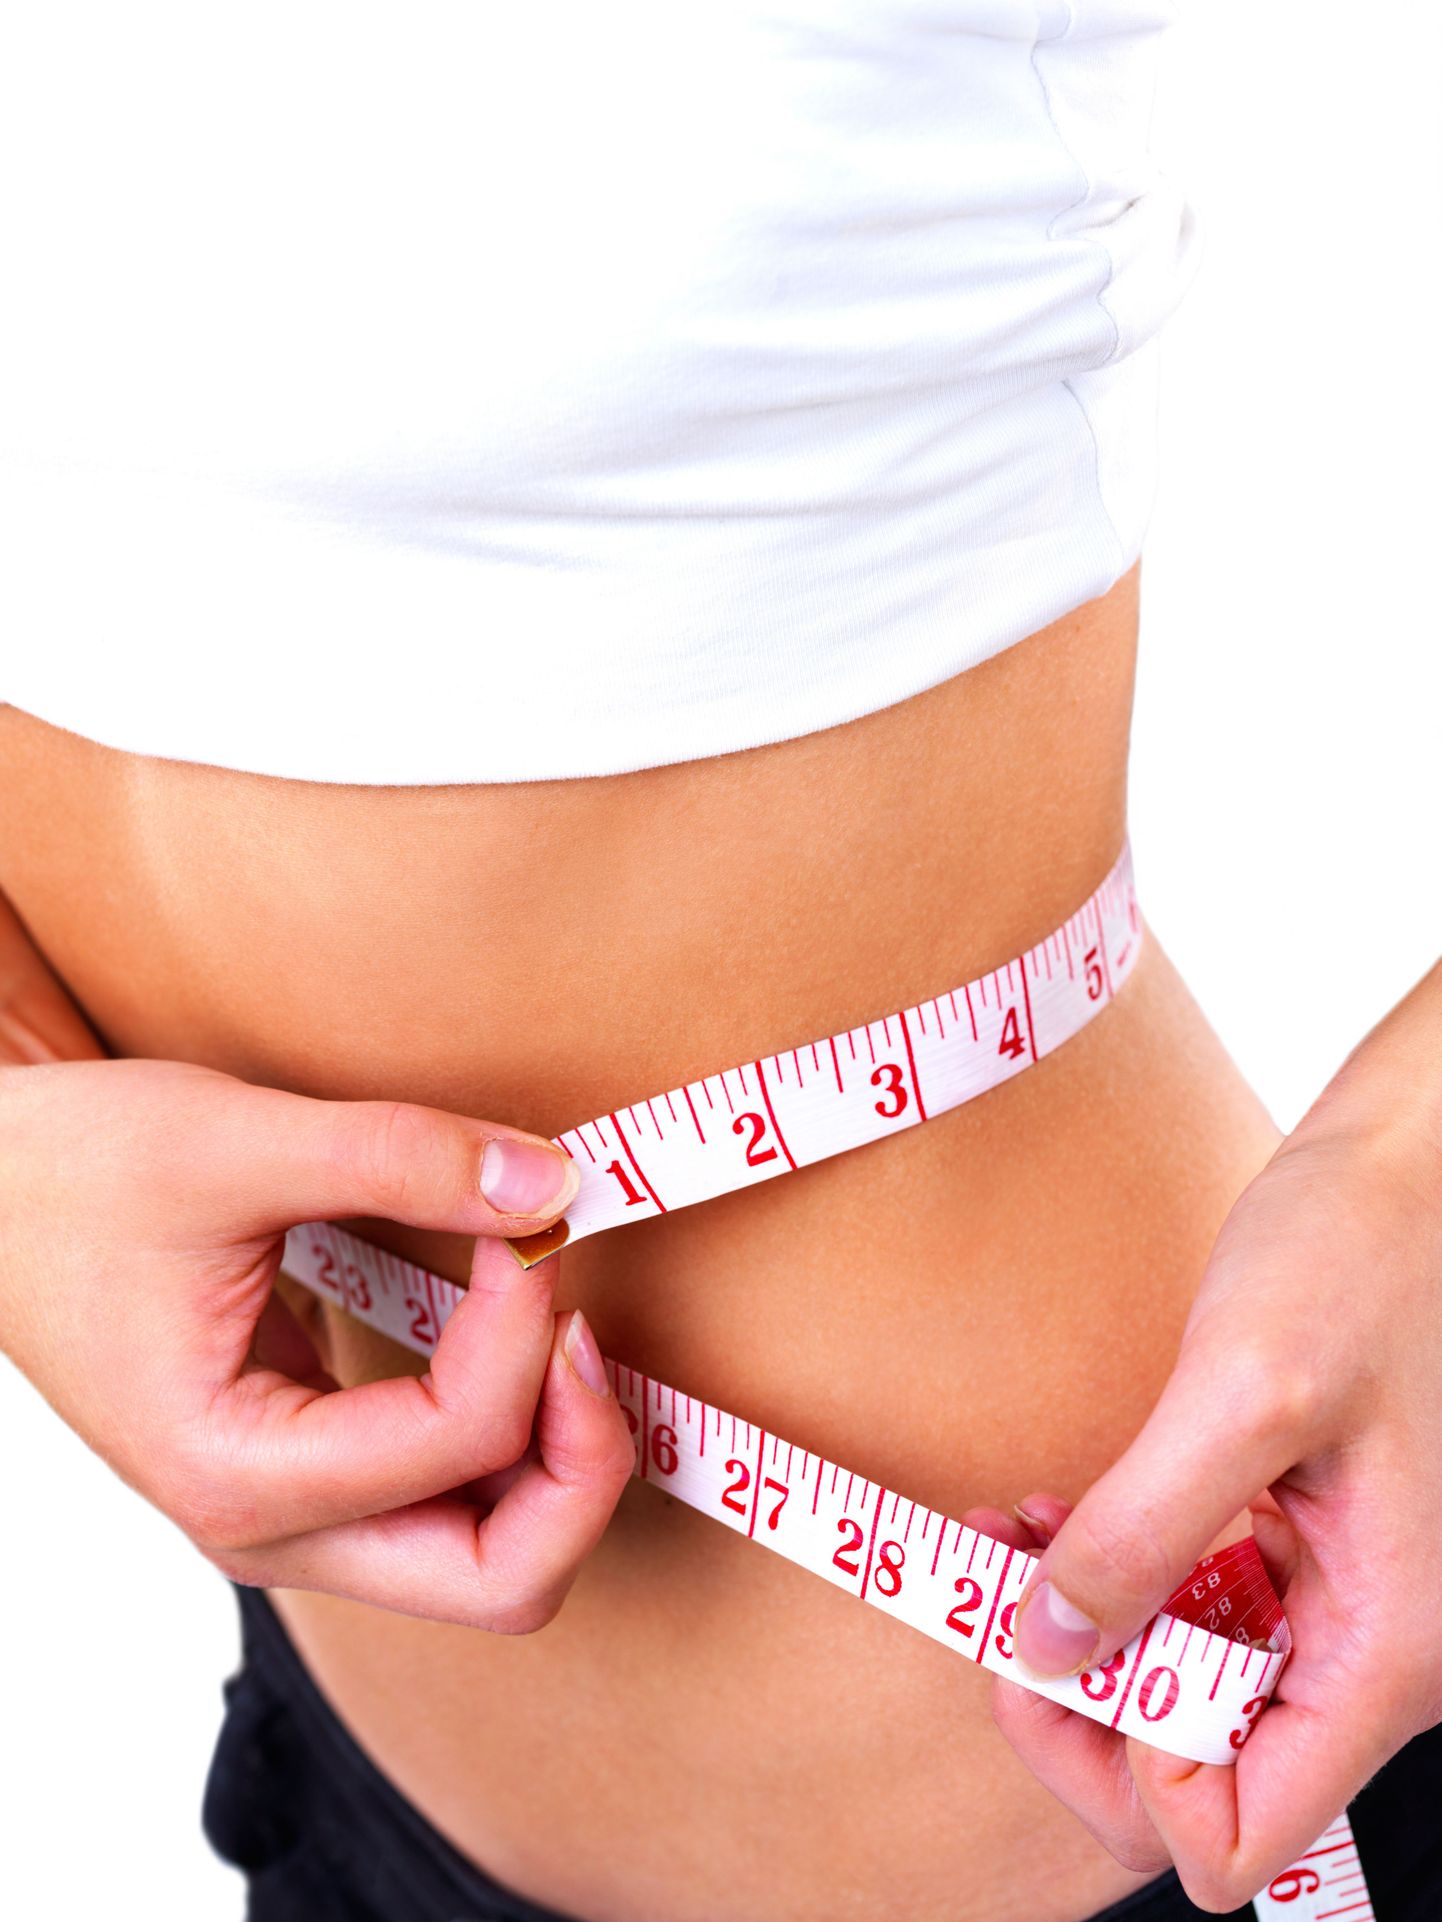 Ameerikas tehtud uuring näitas, et isegi normaalkaalus naised muretsevad paksuksminemise pärast.